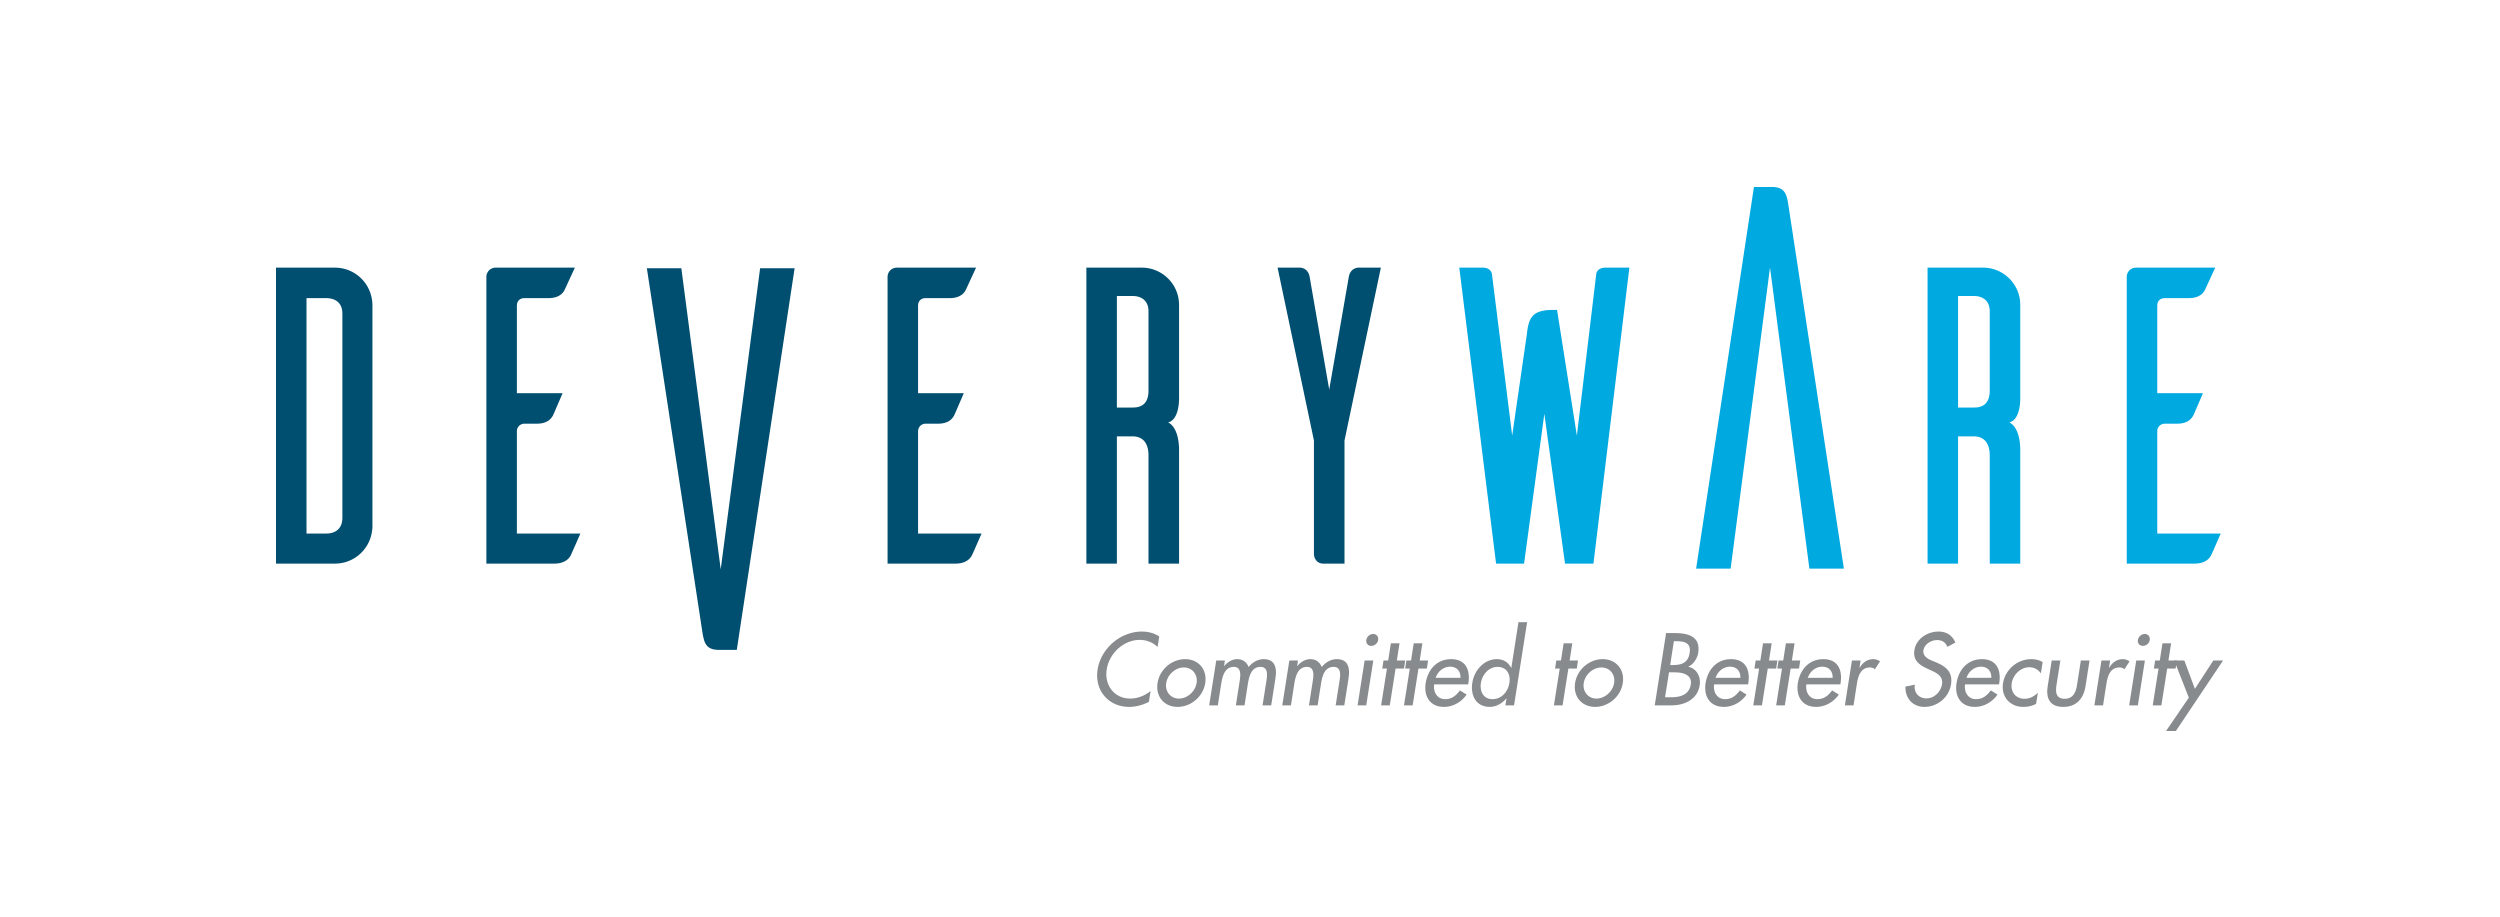 Deveryware logo